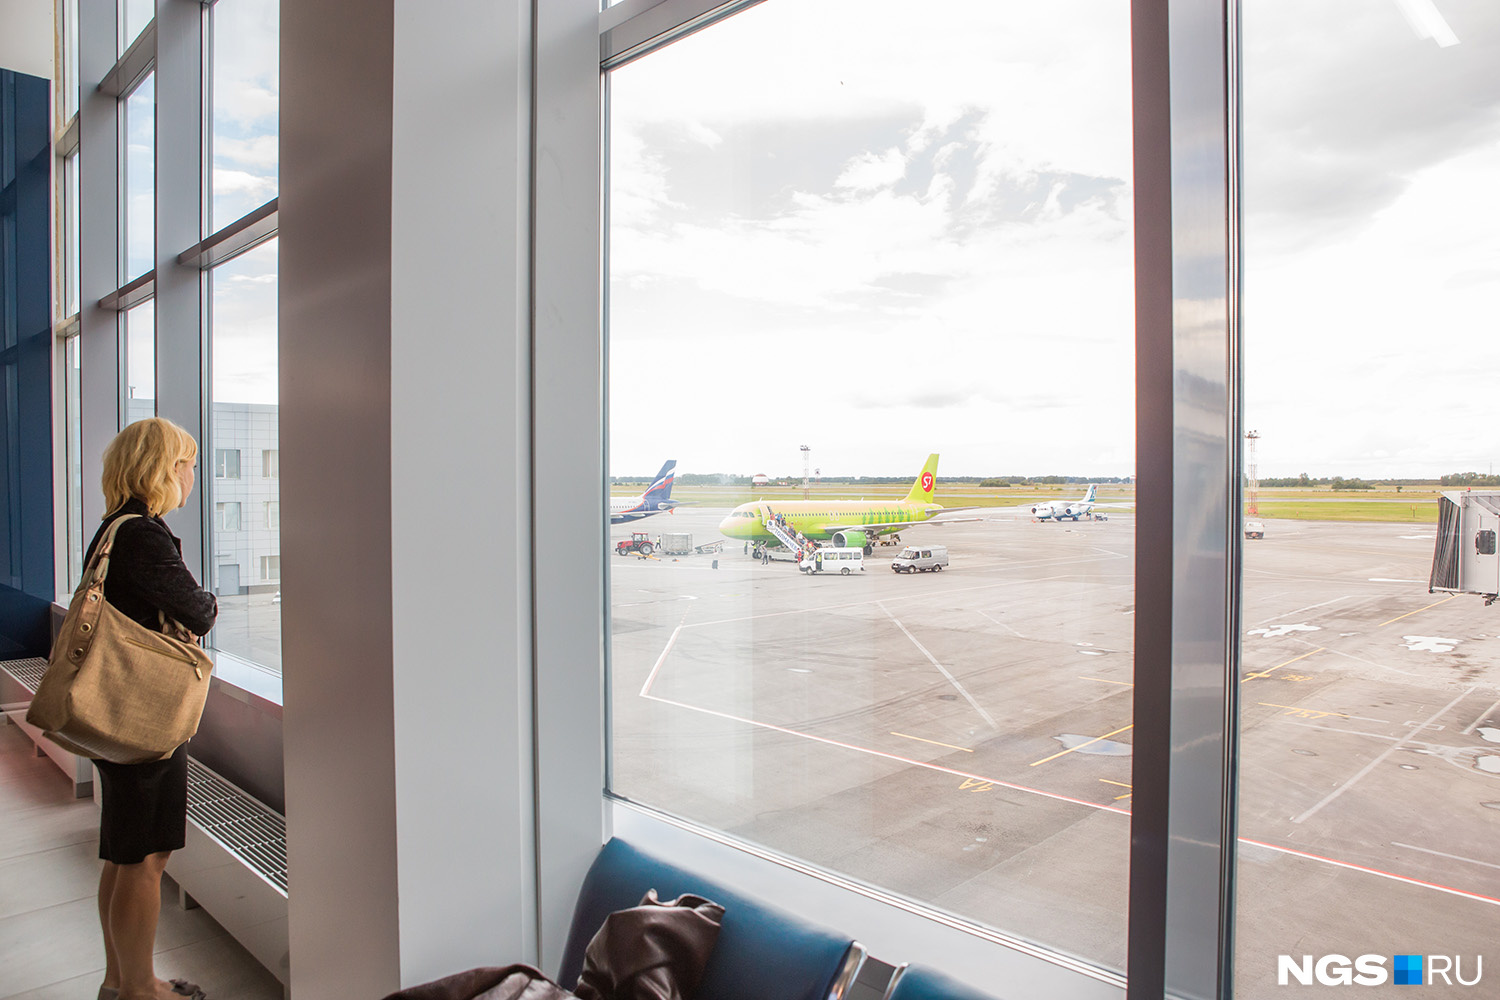 Отель в аэропорту новосибирска. Окно аэропорта. Вид из окна аэропорта. Стеклопакет в аэропорте. Окошко в аэропорту.